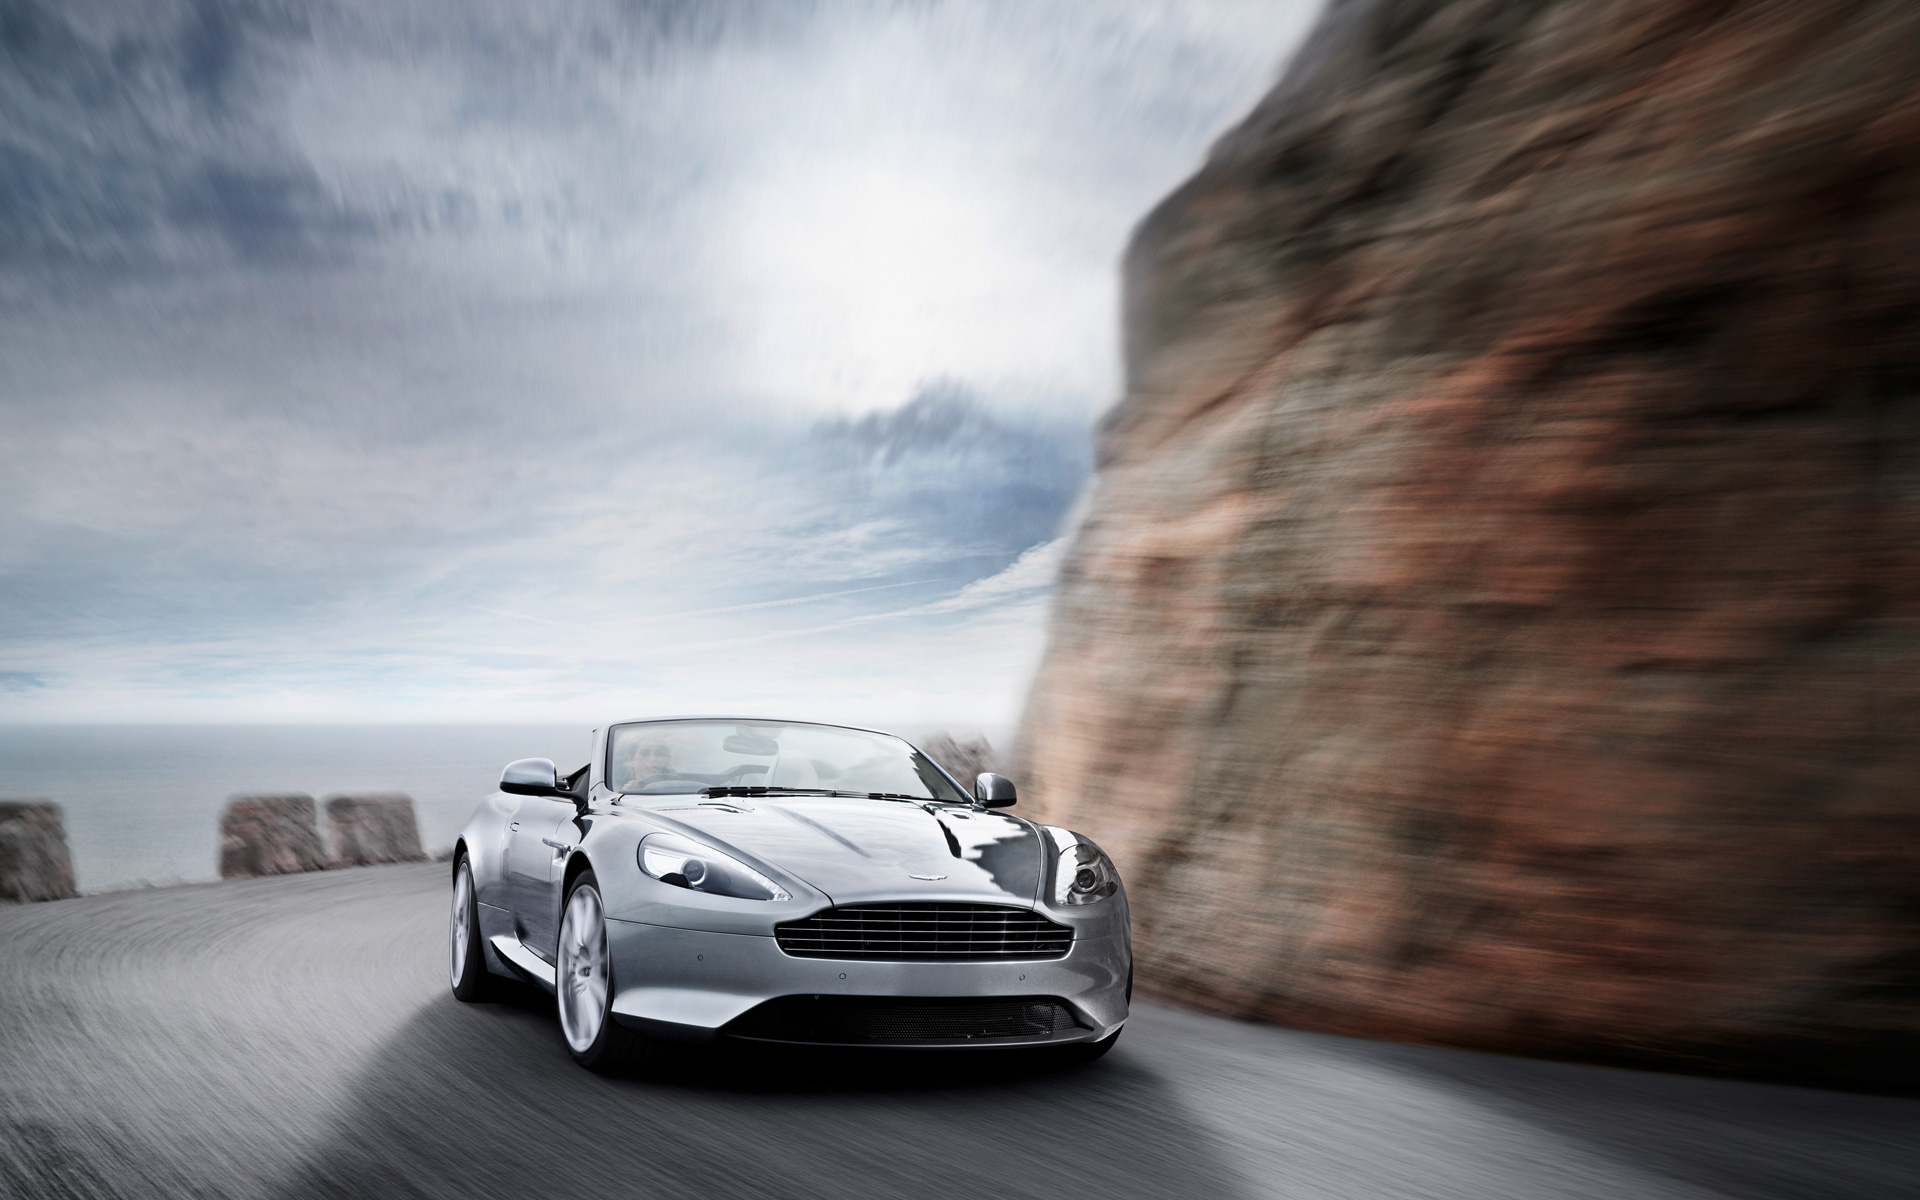  2011 Aston Martin Virage= Wallpaper.